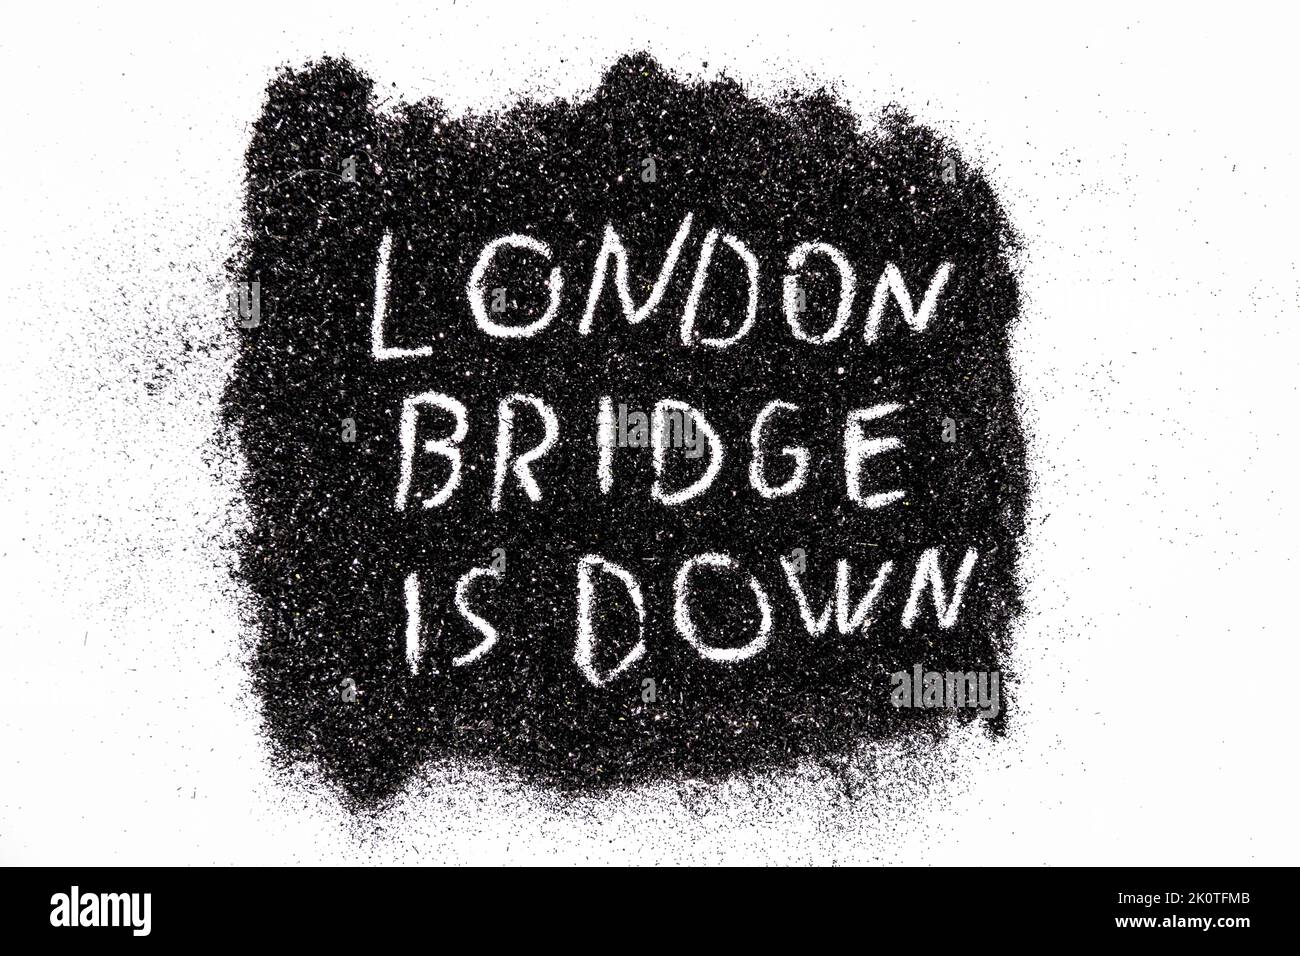 Es ist der Codename der Operation, wenn die Königin von England stirbt, geschrieben auf dem schwarzen Glitzer - DIE LONDON BRIDGE IST UNTEN. Stockfoto